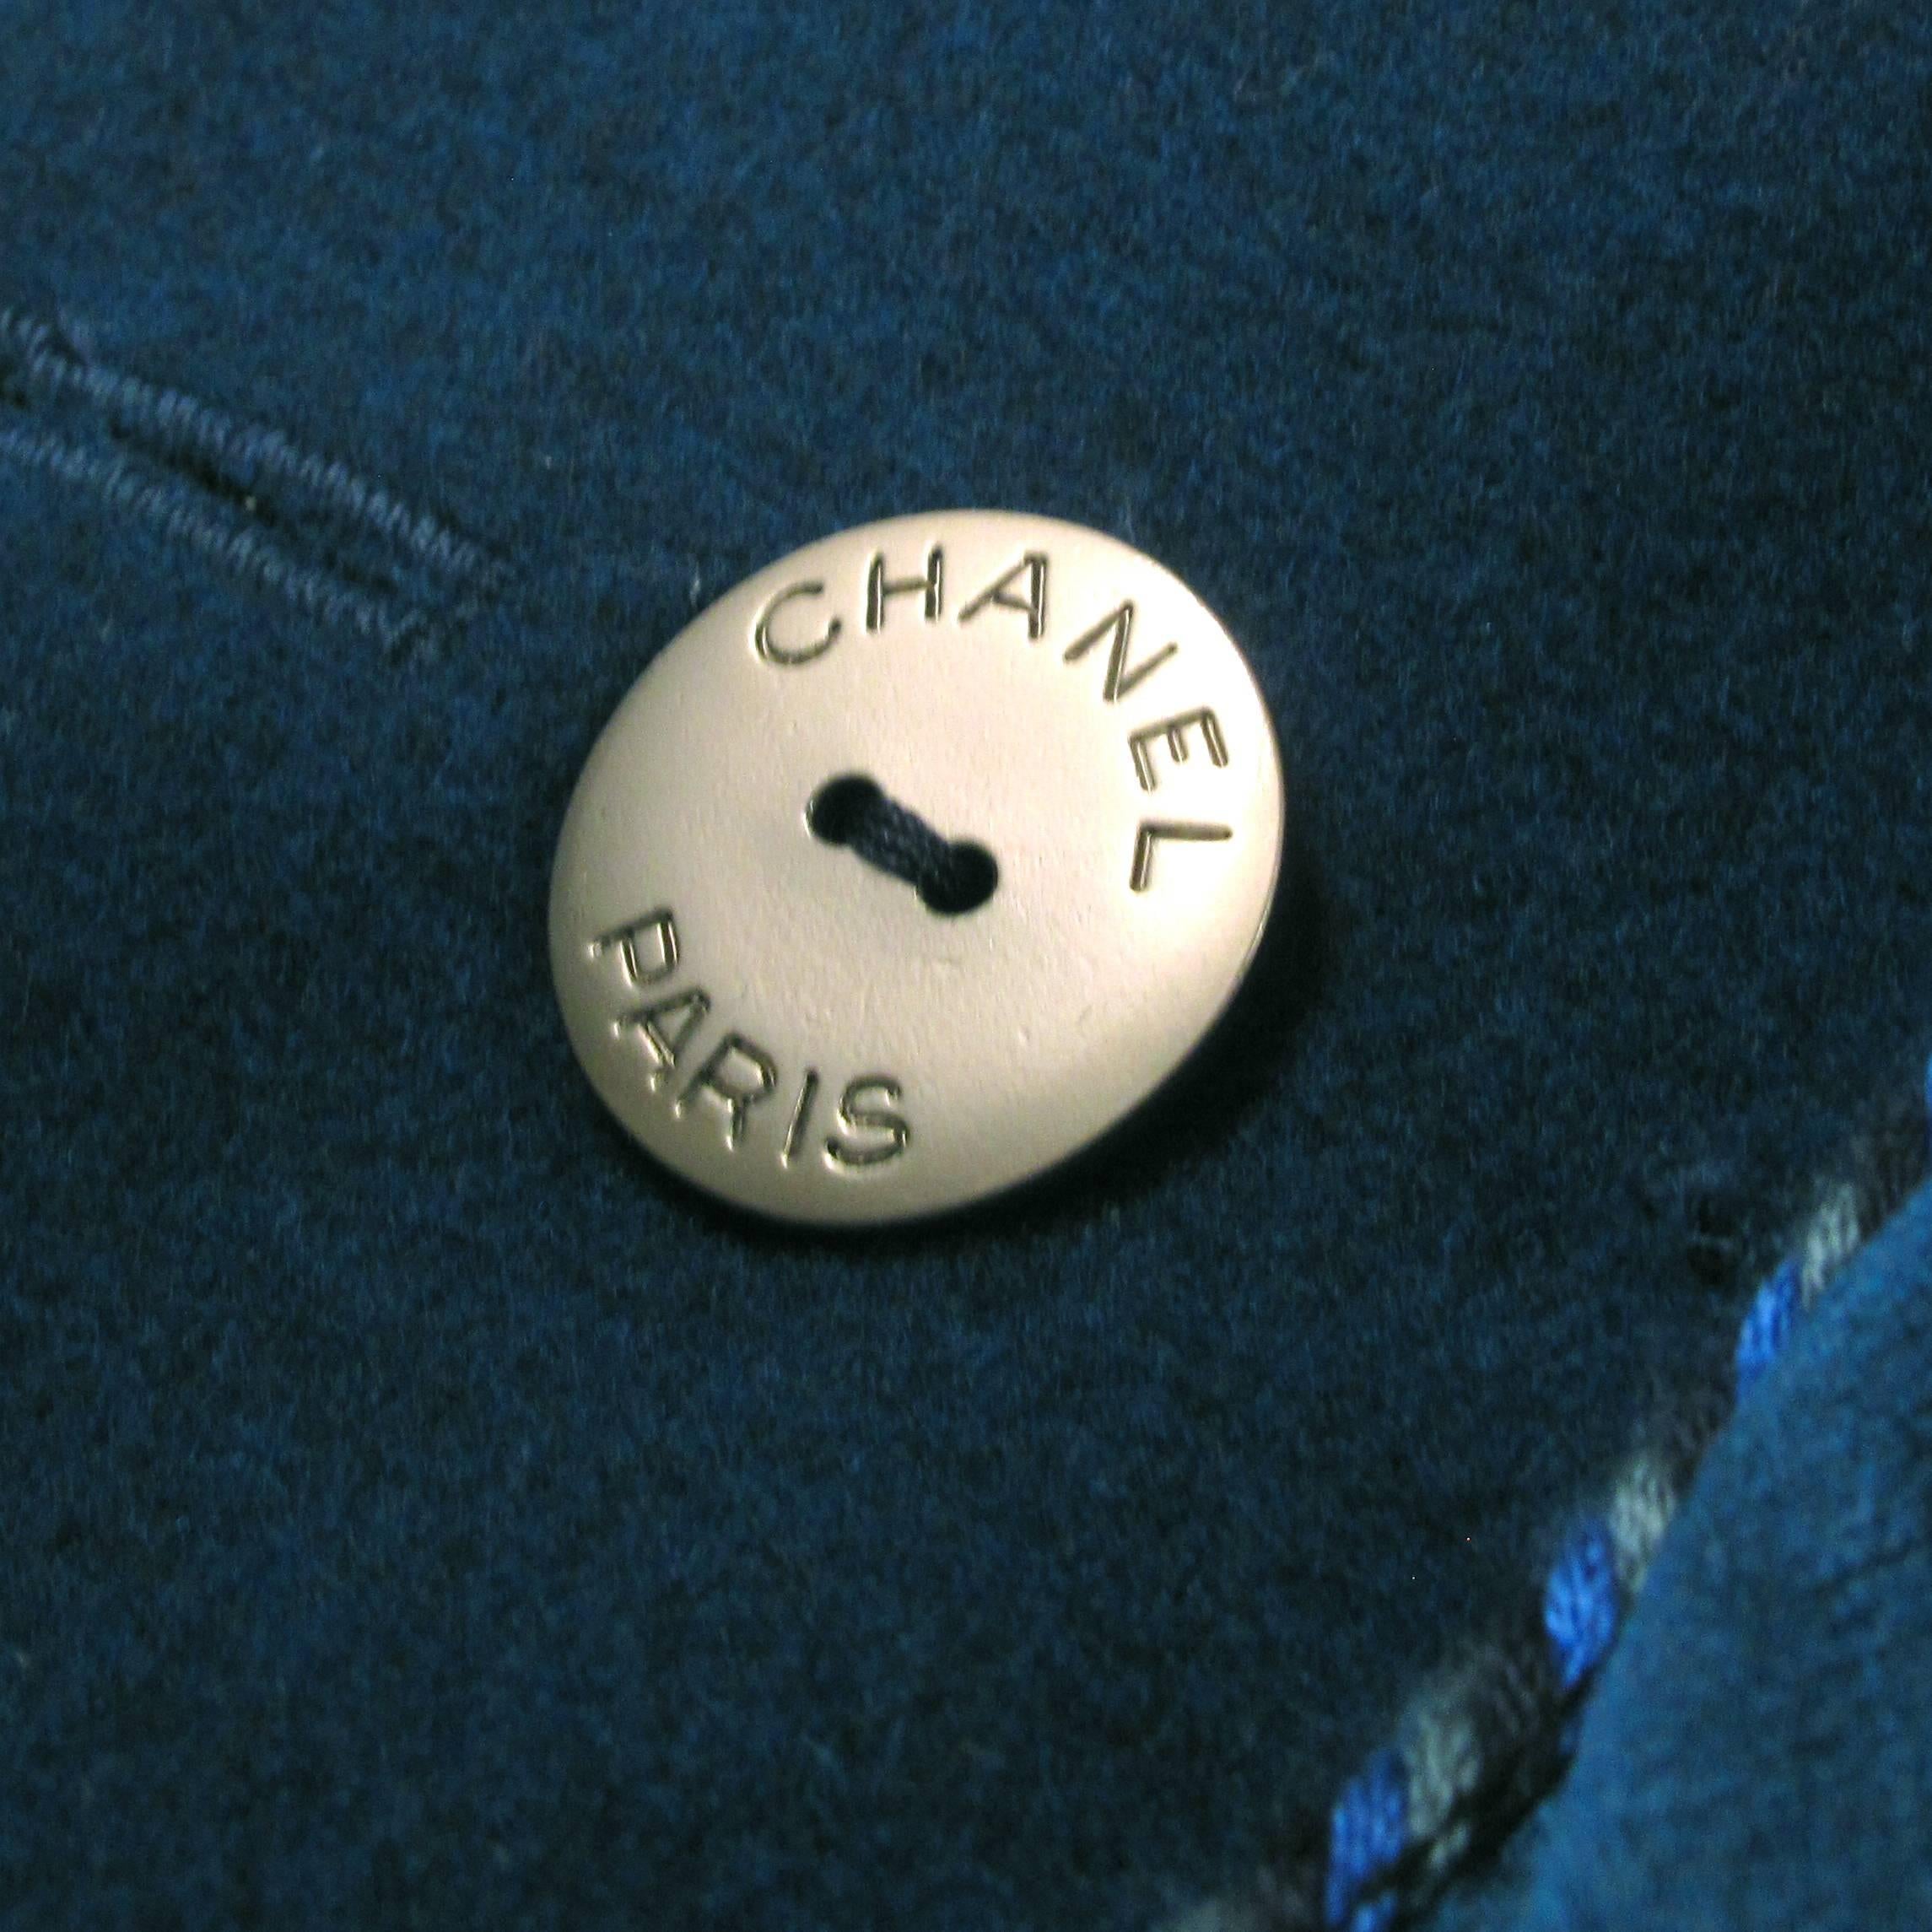 Women's Chanel $6600 - 2013 Peacoat 10 12 44 Runway Blue Wool Coat Jacket CC Silk XL 13K